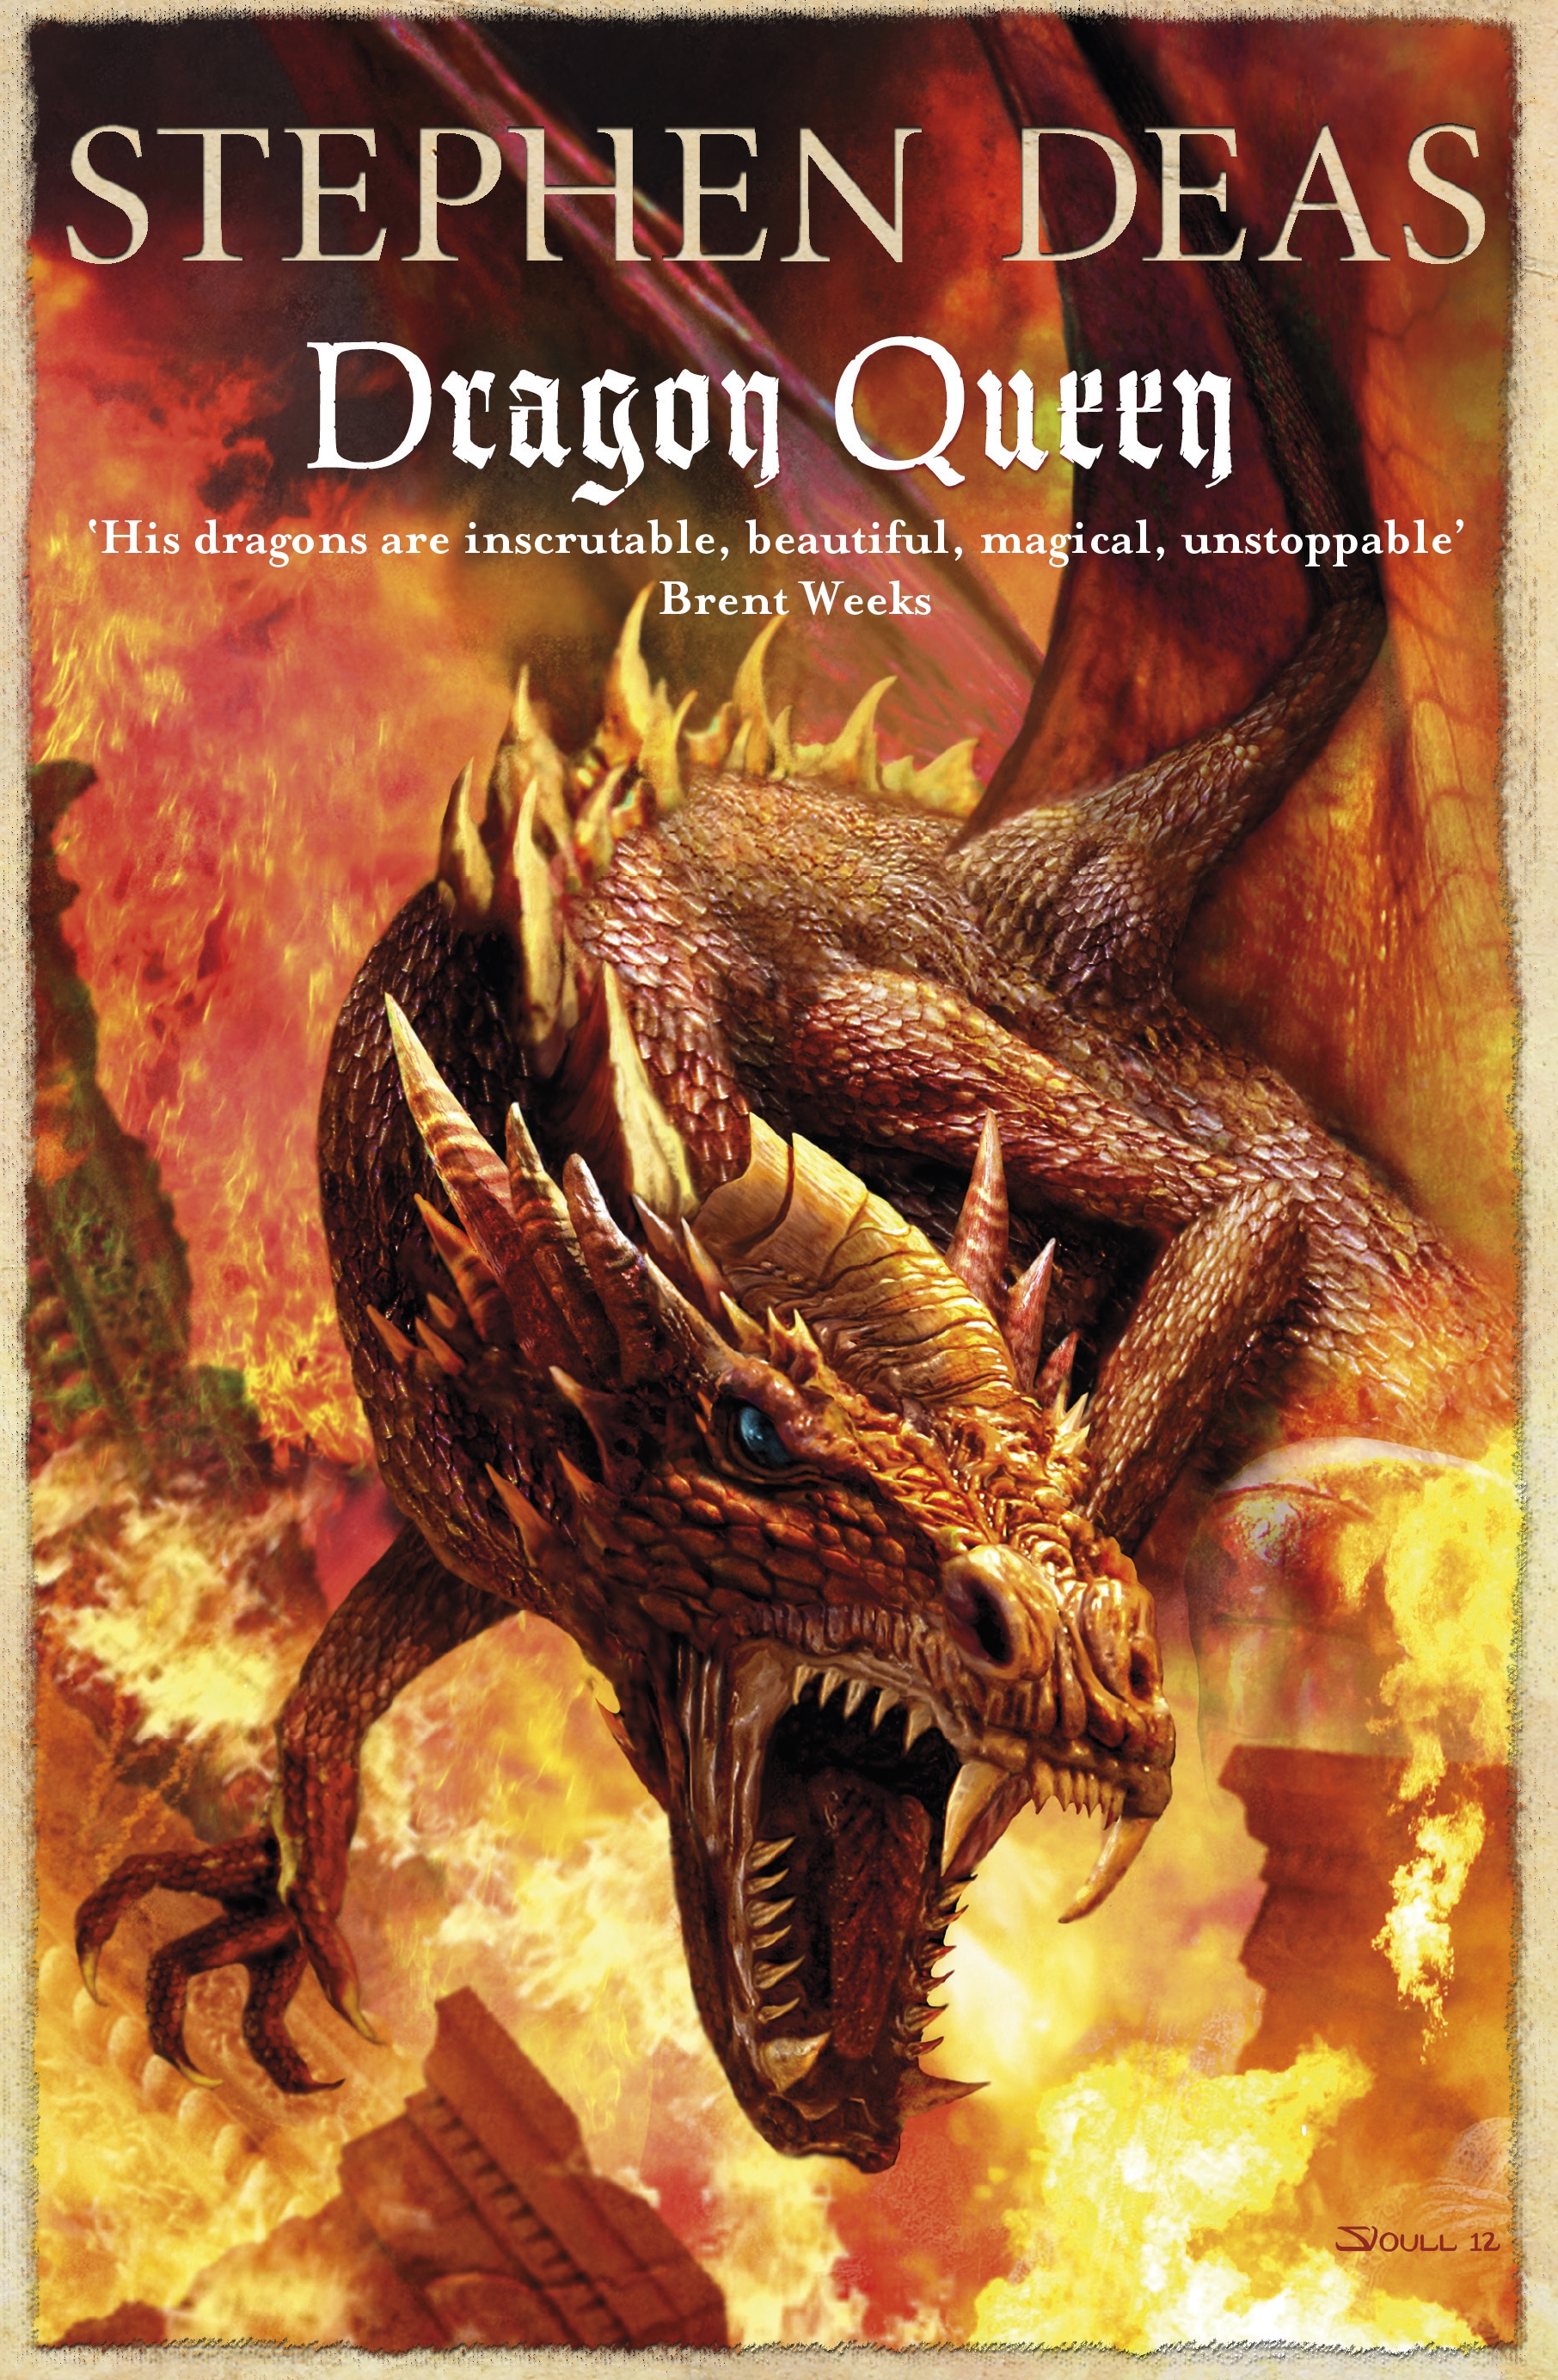 Собрание драконов и книг. Книги на английском языке фэнтези. Книга дракона. Британские фэнтези книги. Книга Dragon Queen.